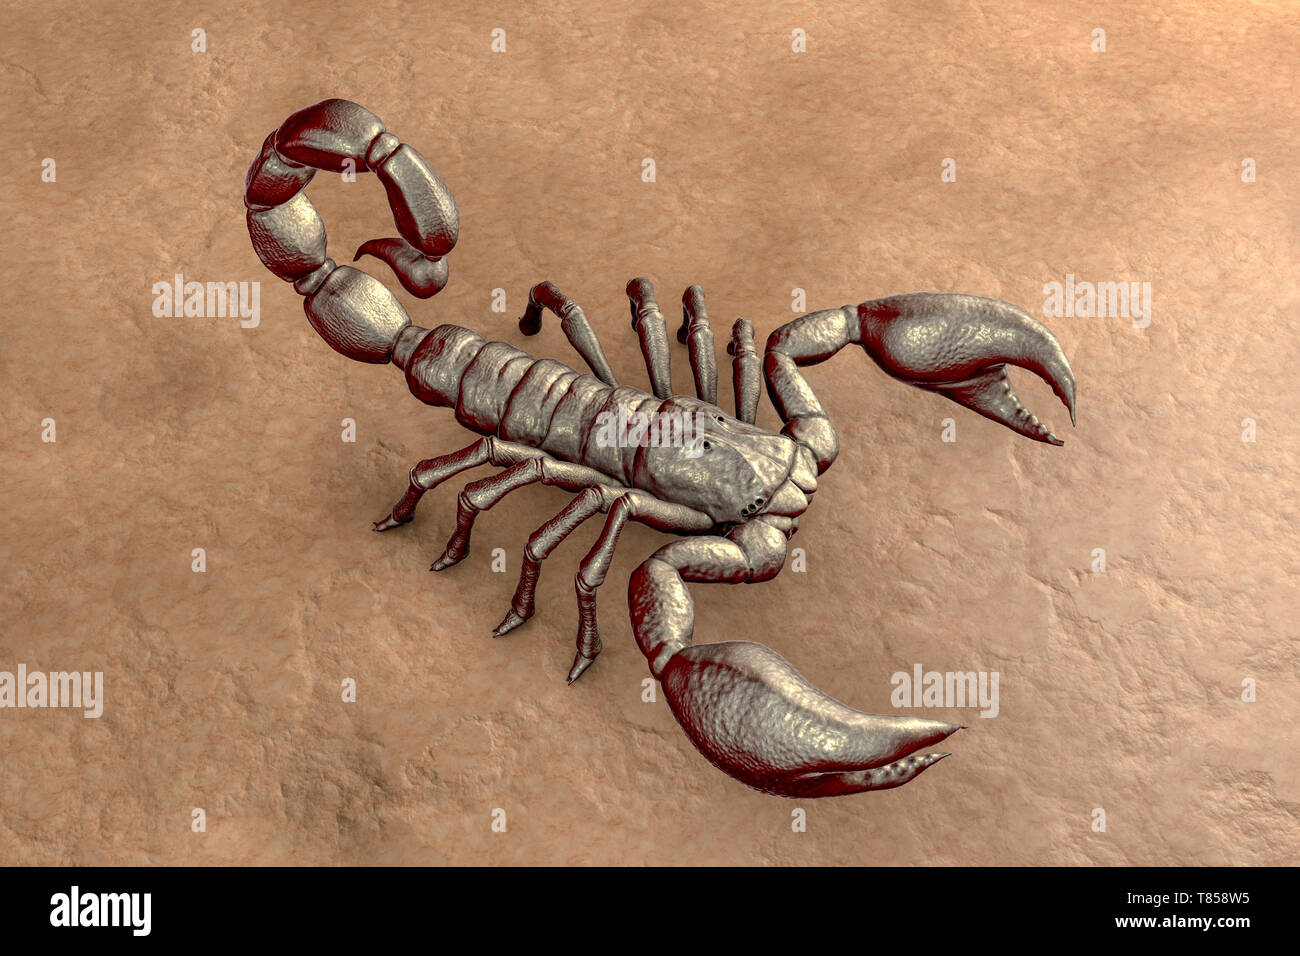 Scorpion, illustration Stock Photo